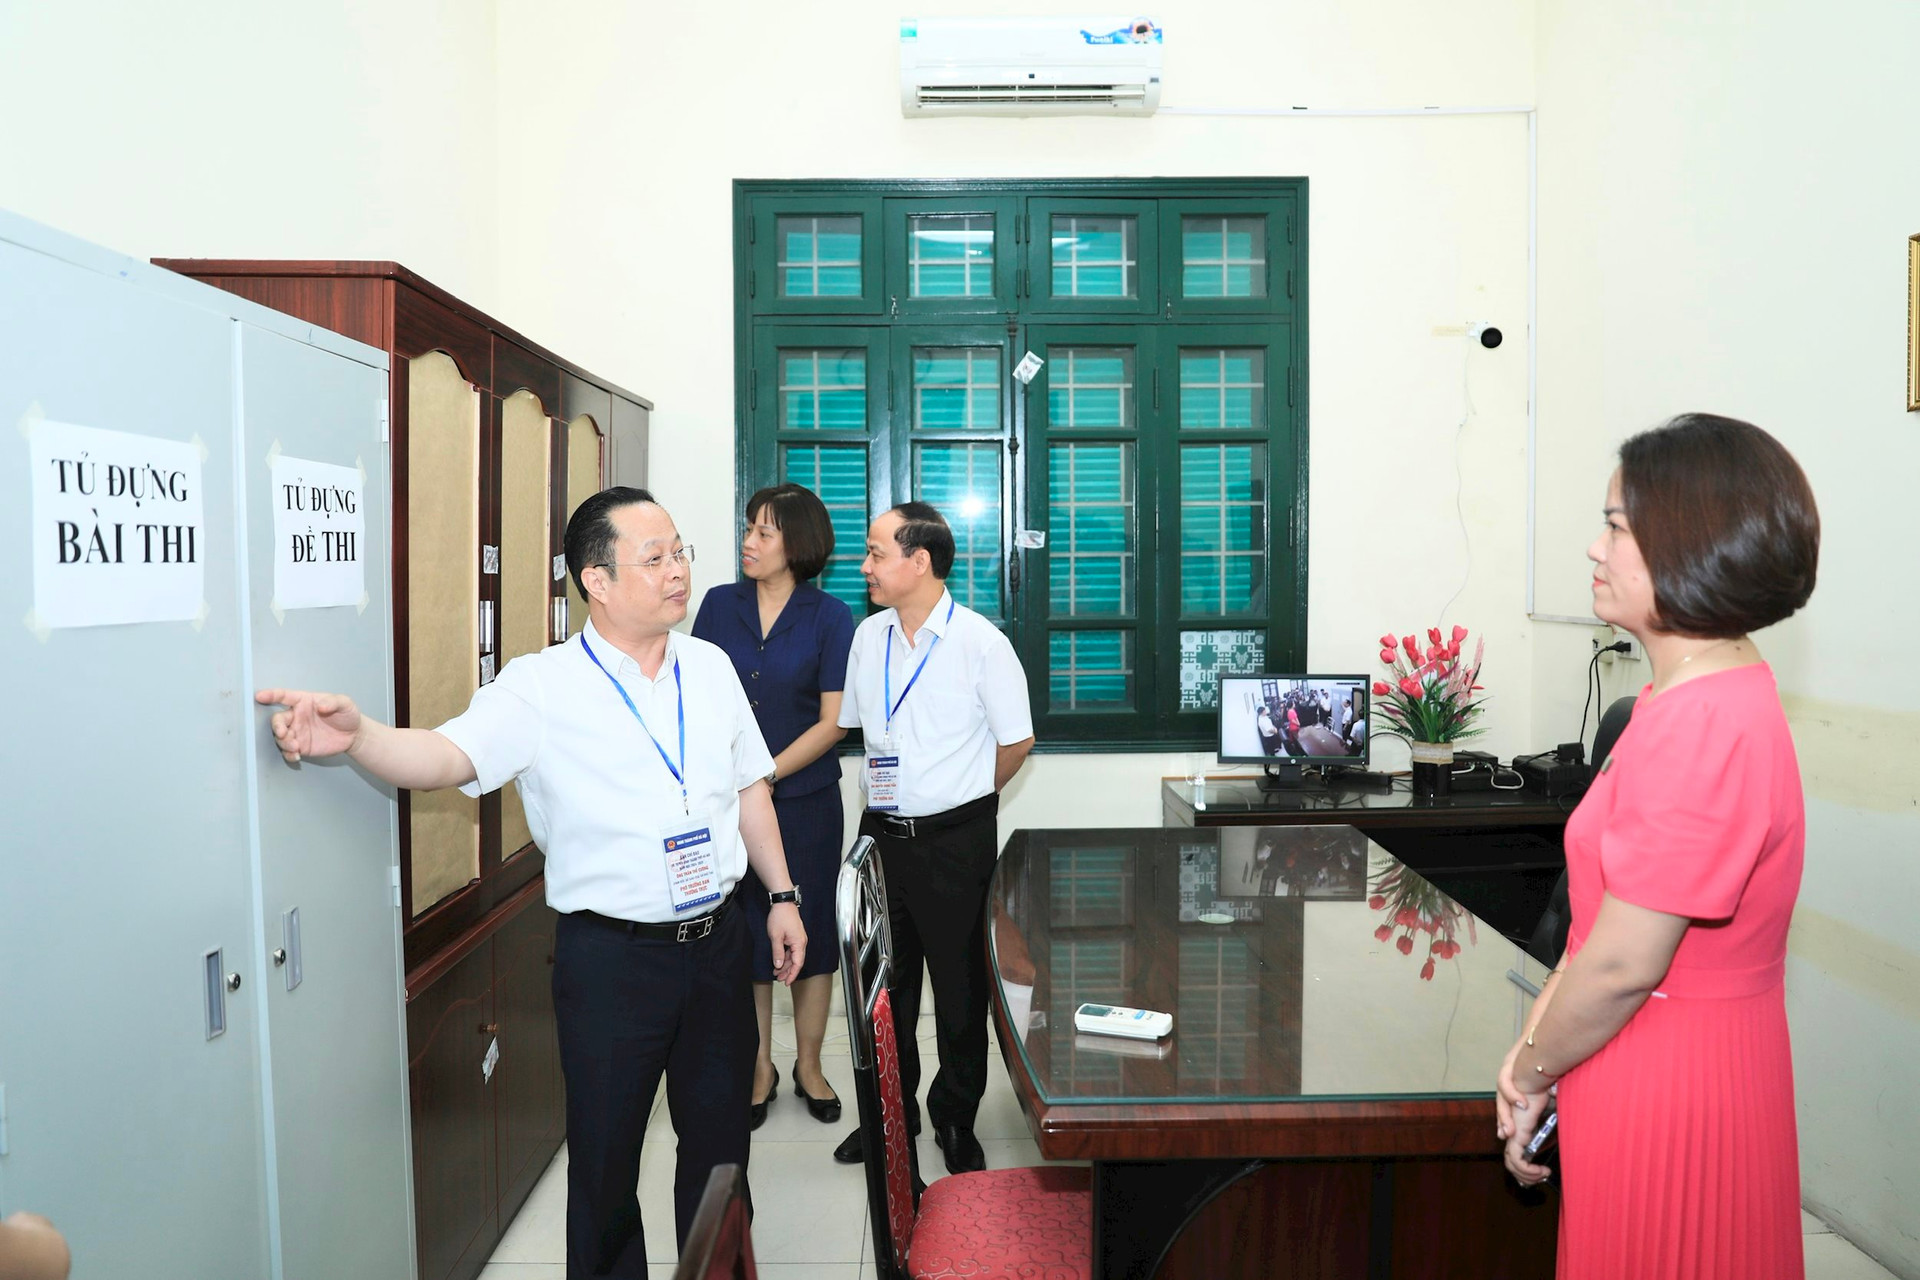 Sở GD-ĐT Hà Nội kiểm tra phòng bảo quản đề và bài thi tại Trường THPT Thăng Long. Ảnh: Quang Thái.